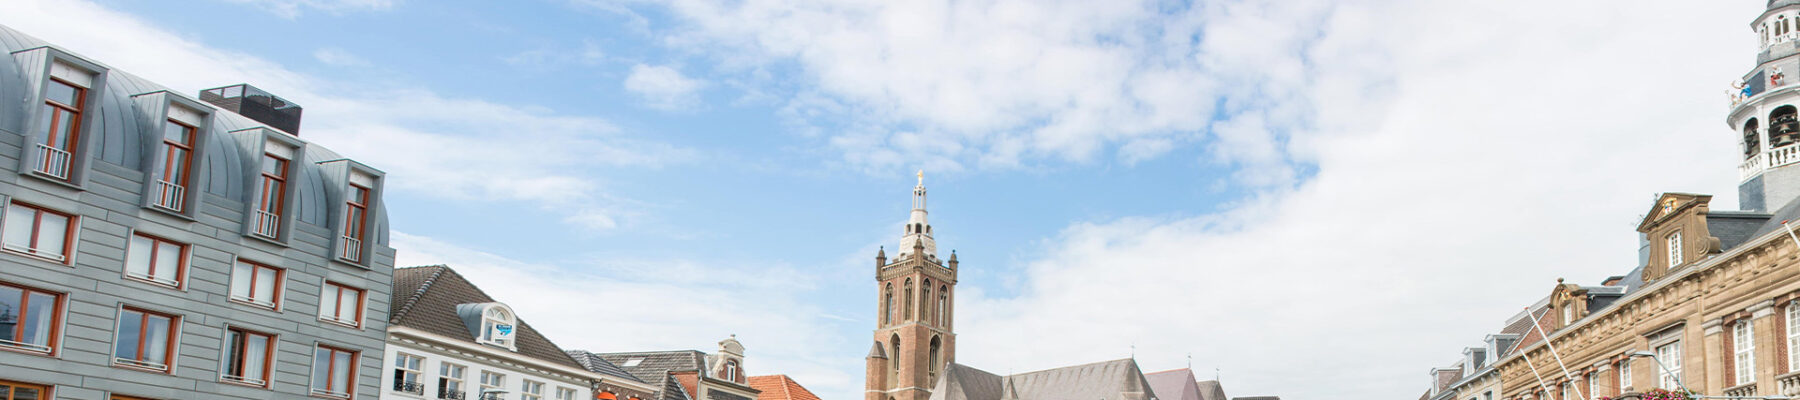 Een sfeervol beeld van het centrum van Roermond, met historische gebouwen en het imposante stadhuis prominent aanwezig op het marktplein.